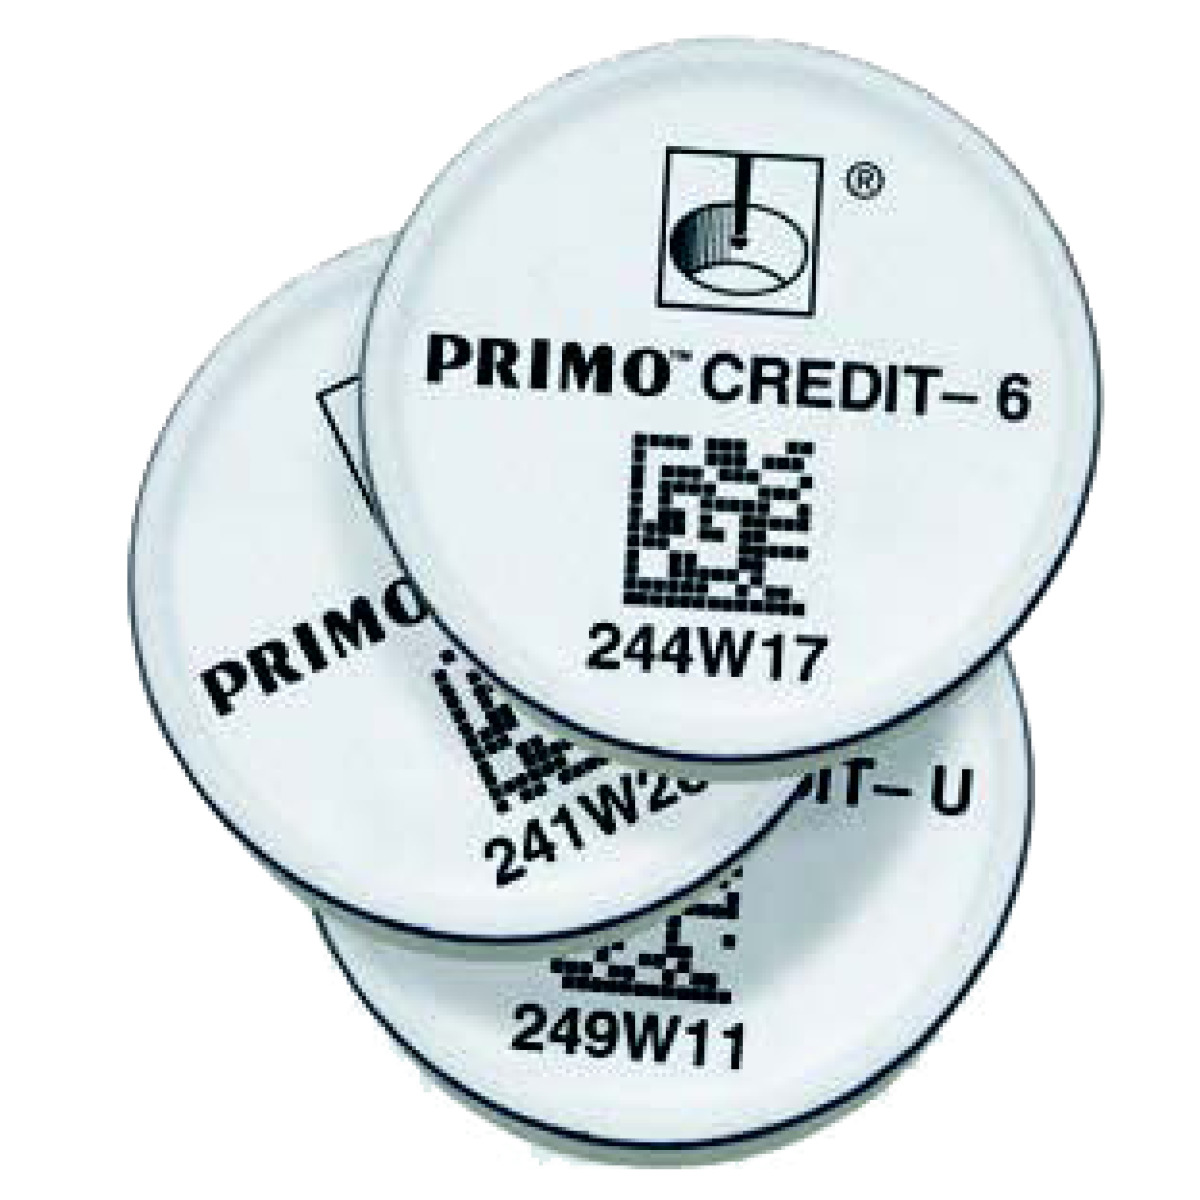 Bild für Kategorie Primo Credit Token